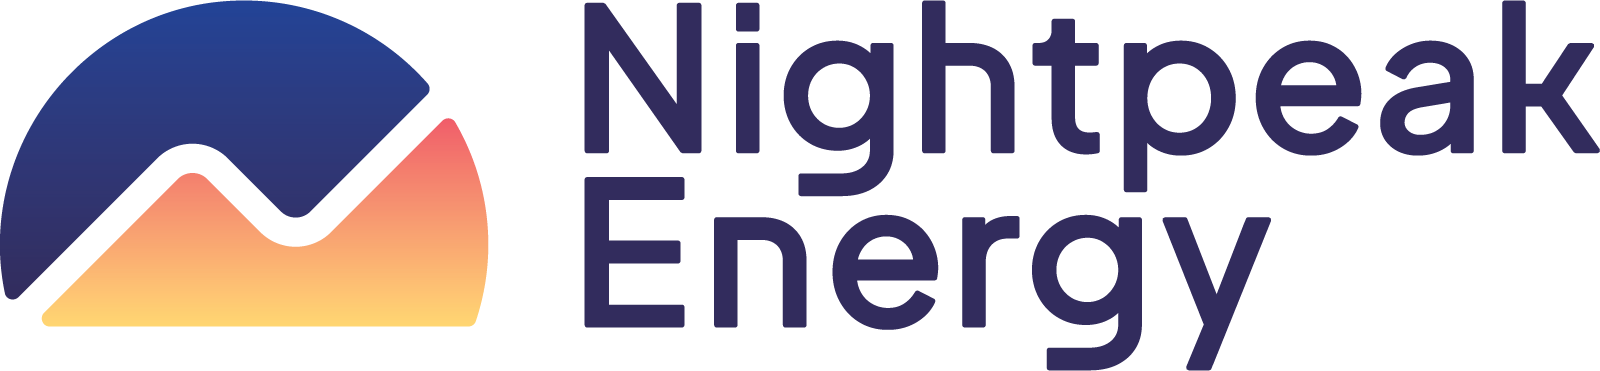 Nightpeak Energy-logo.png